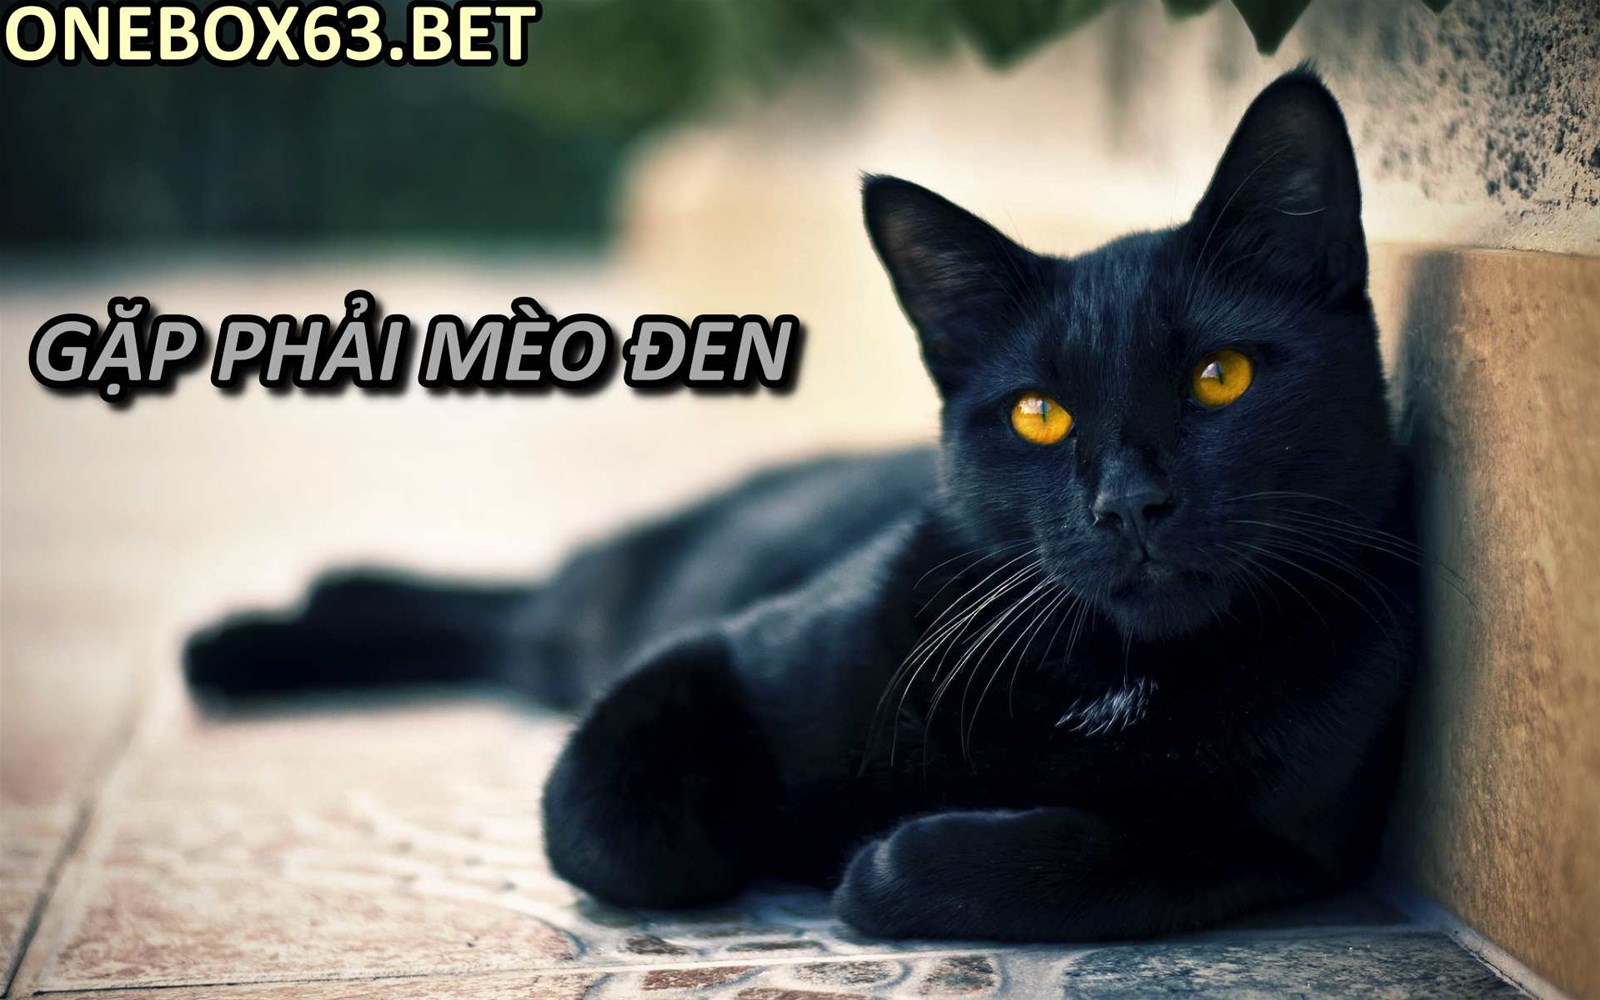 Gặp phải mèo đen